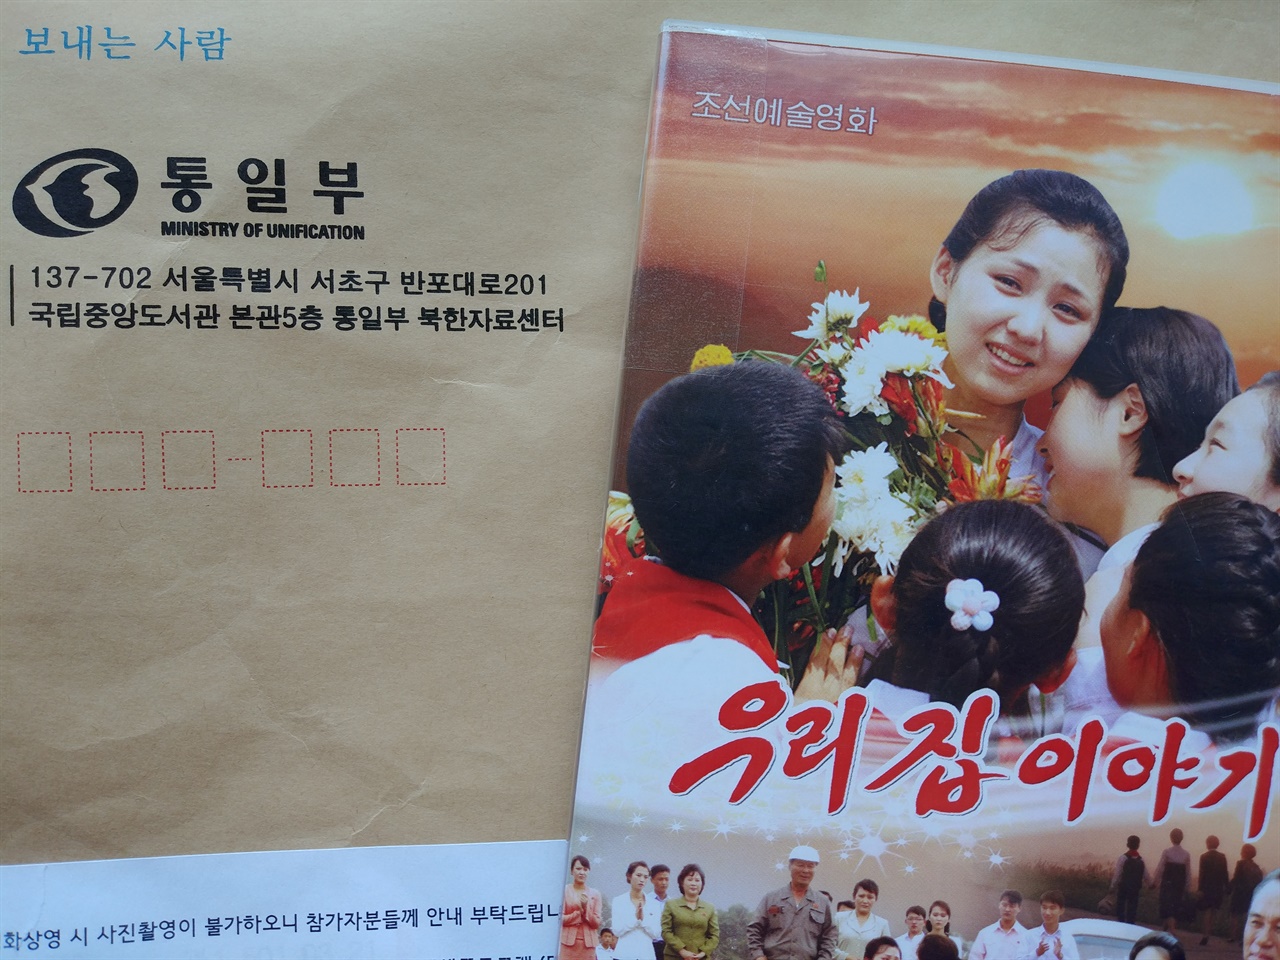 통일부 북한자료센터로부터 교내 상영 허가를 받았습니다. 내블통이 출범한 날, DVD를 담은 소포가 도착했습니다.